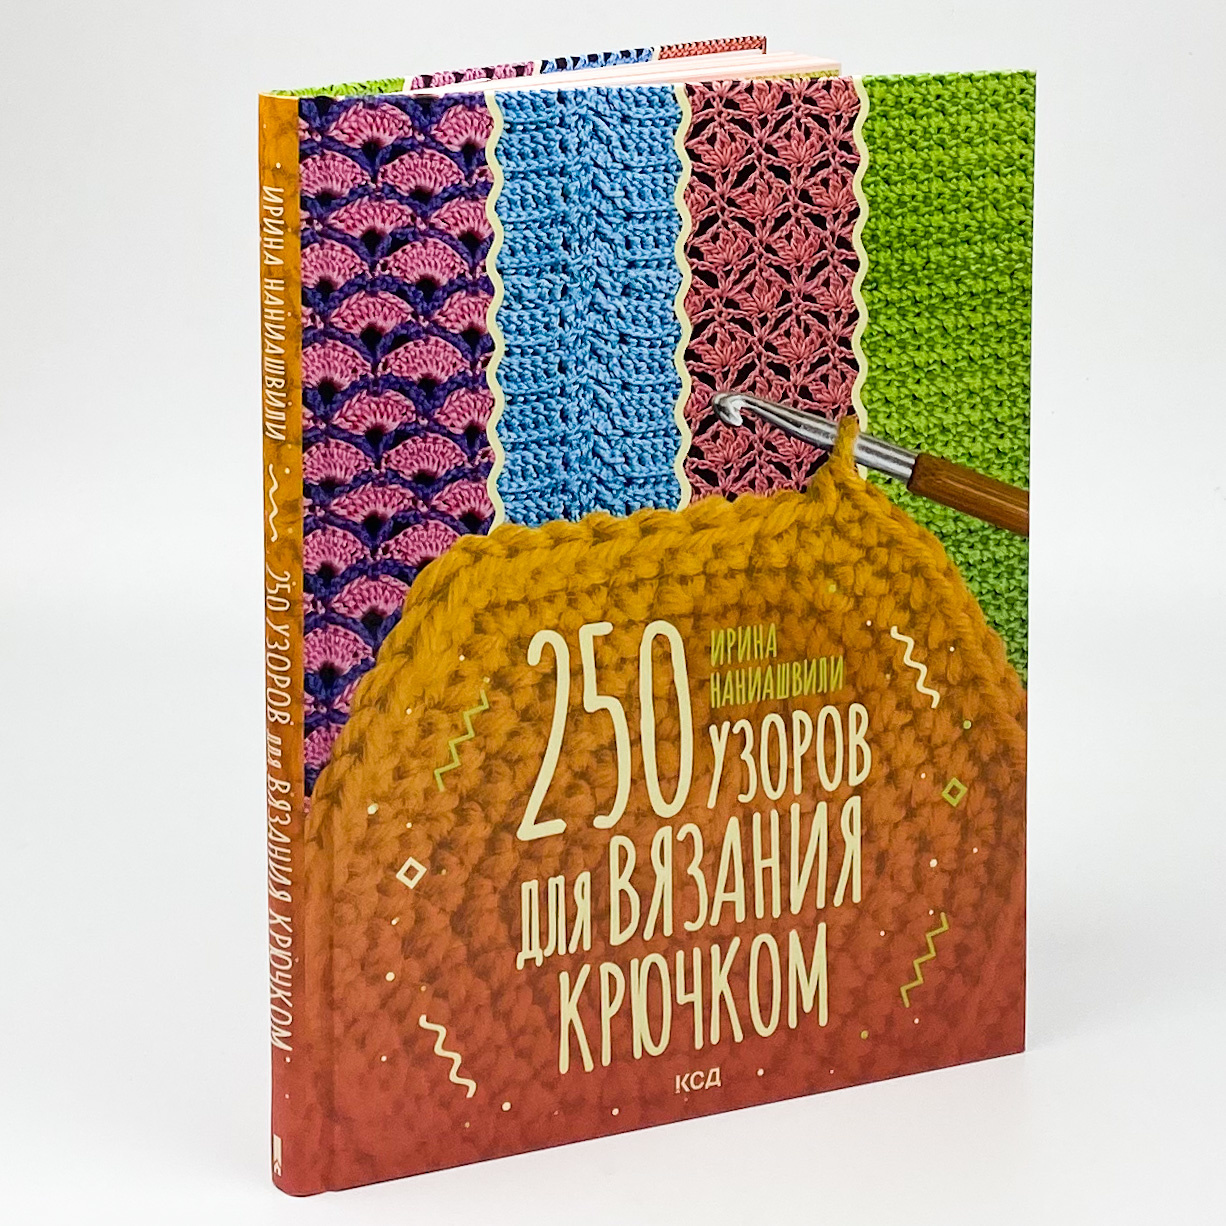 250 узоров для вязания крючком. Автор — Ирина Наниашвили. 